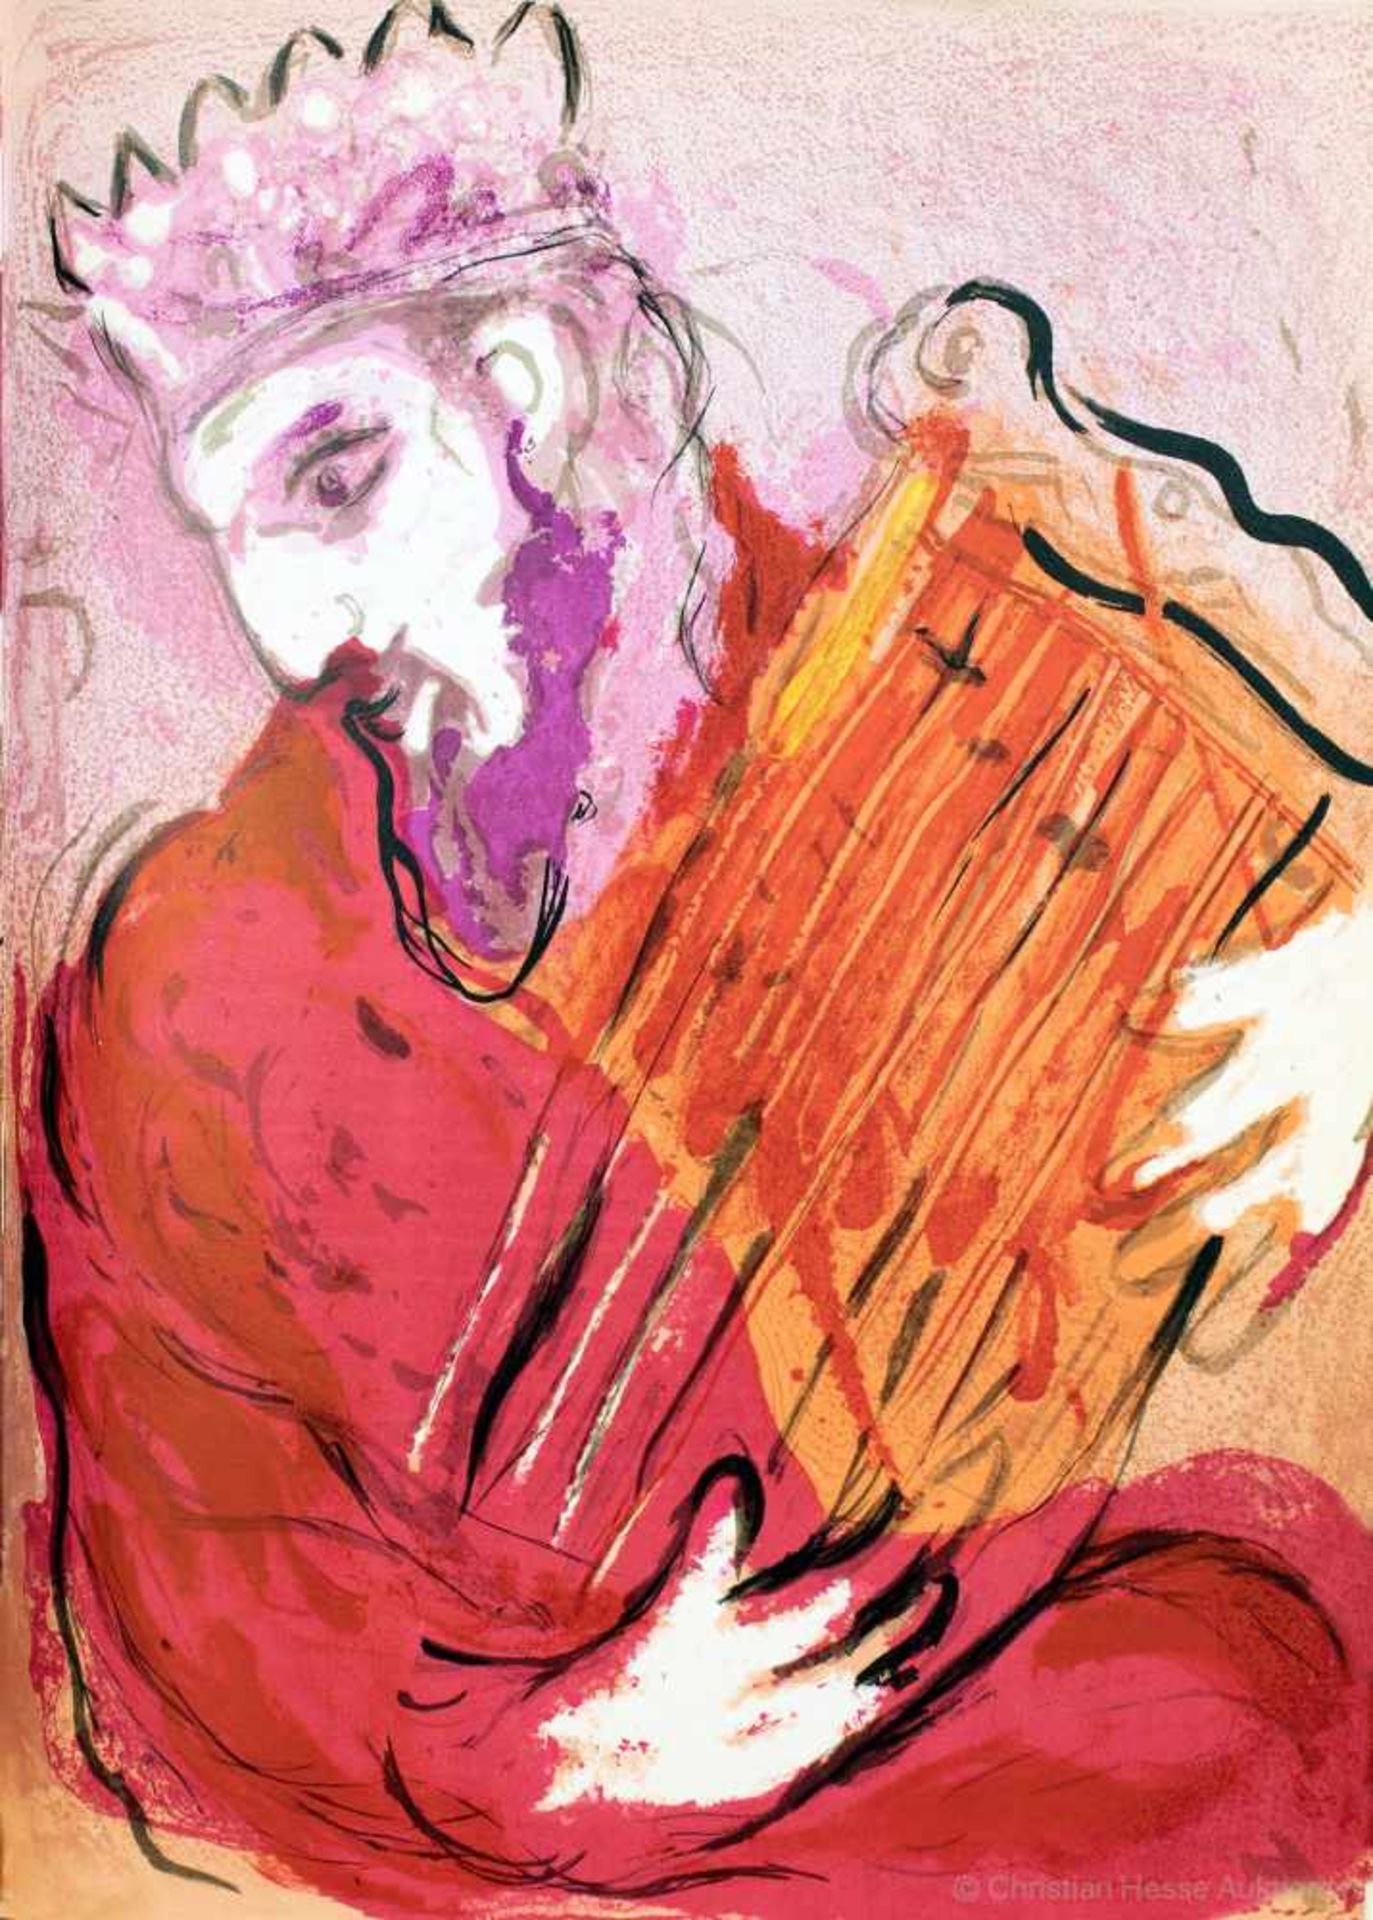 Einbände - Roland Meuter, Ascona - Marc Chagall. Bible. Paris, Verve 1956. Mit 30 Lithographien, von - Image 4 of 5